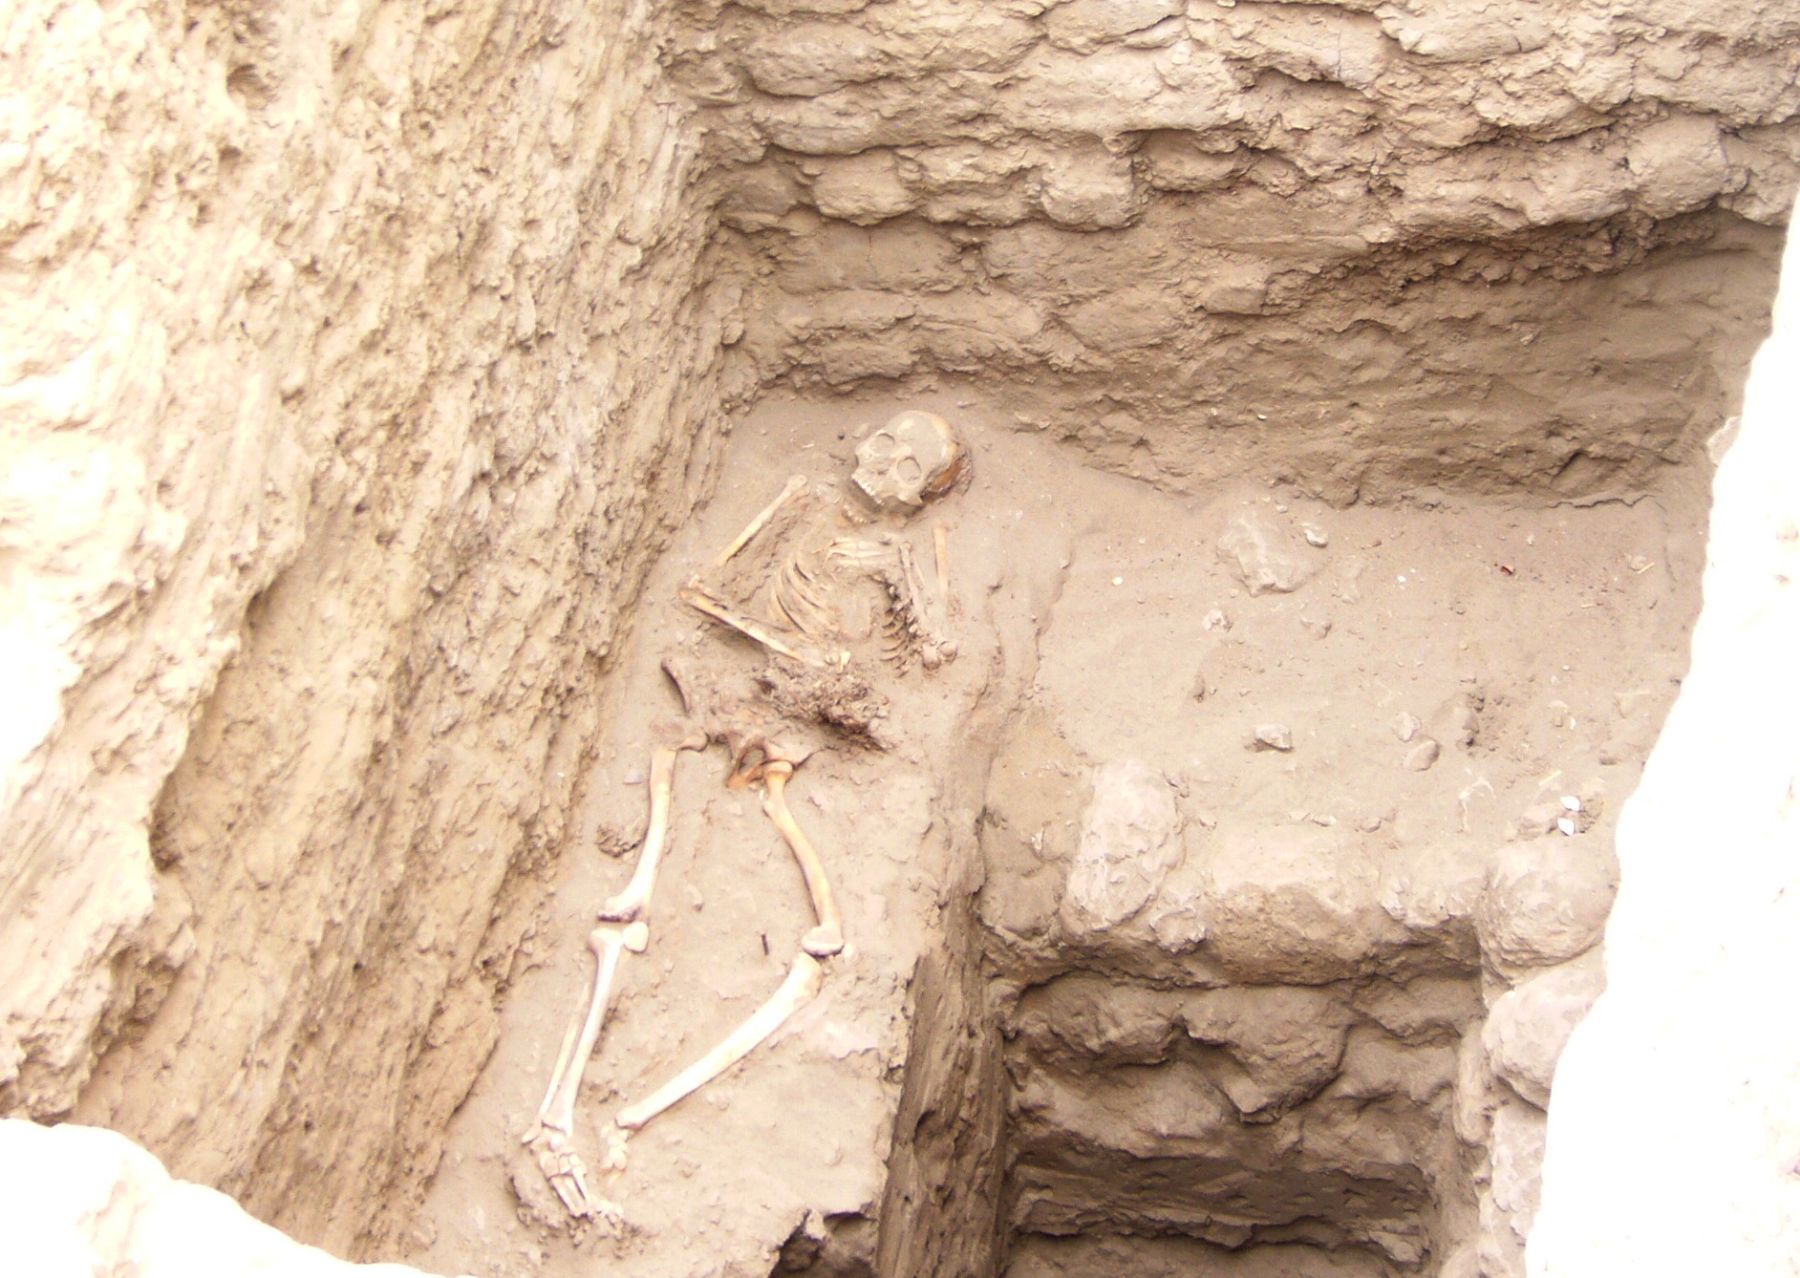 Entierro de sacrificios humanos en complejo arqueológico de Chotuna (Lambayeque). Foto: ANDINA.